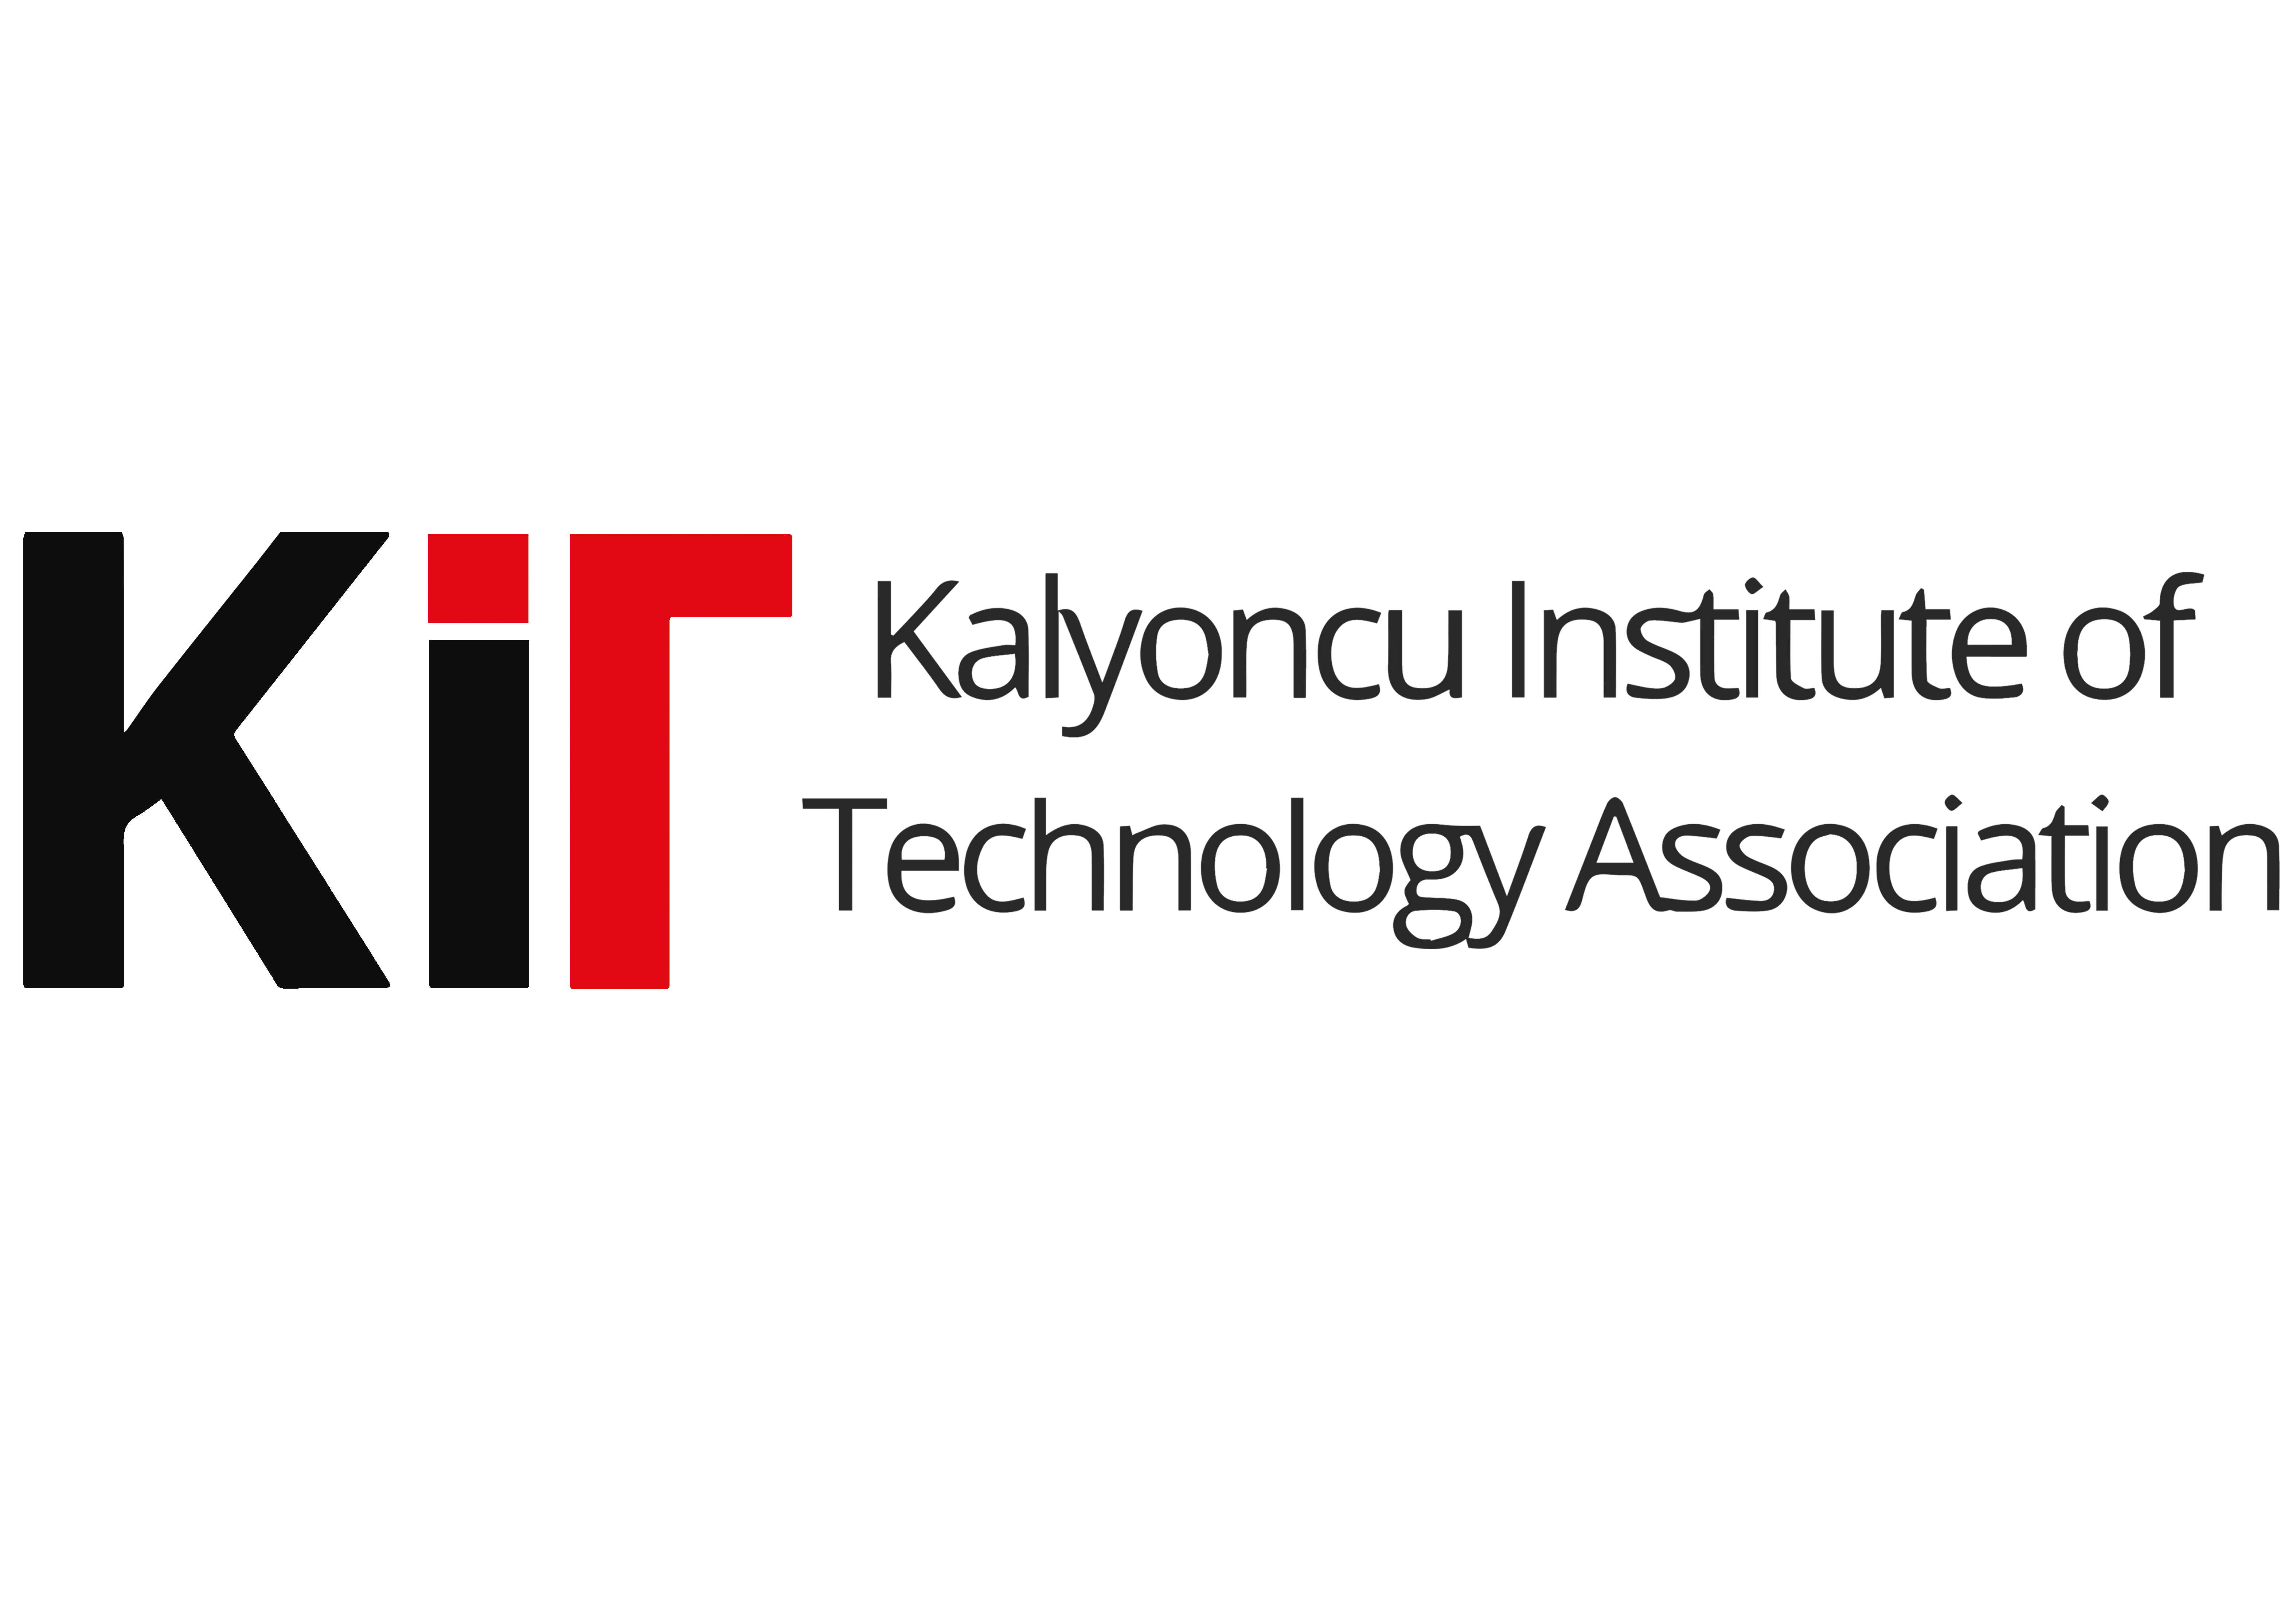 KIT – Kalyoncu Institute Of Technology